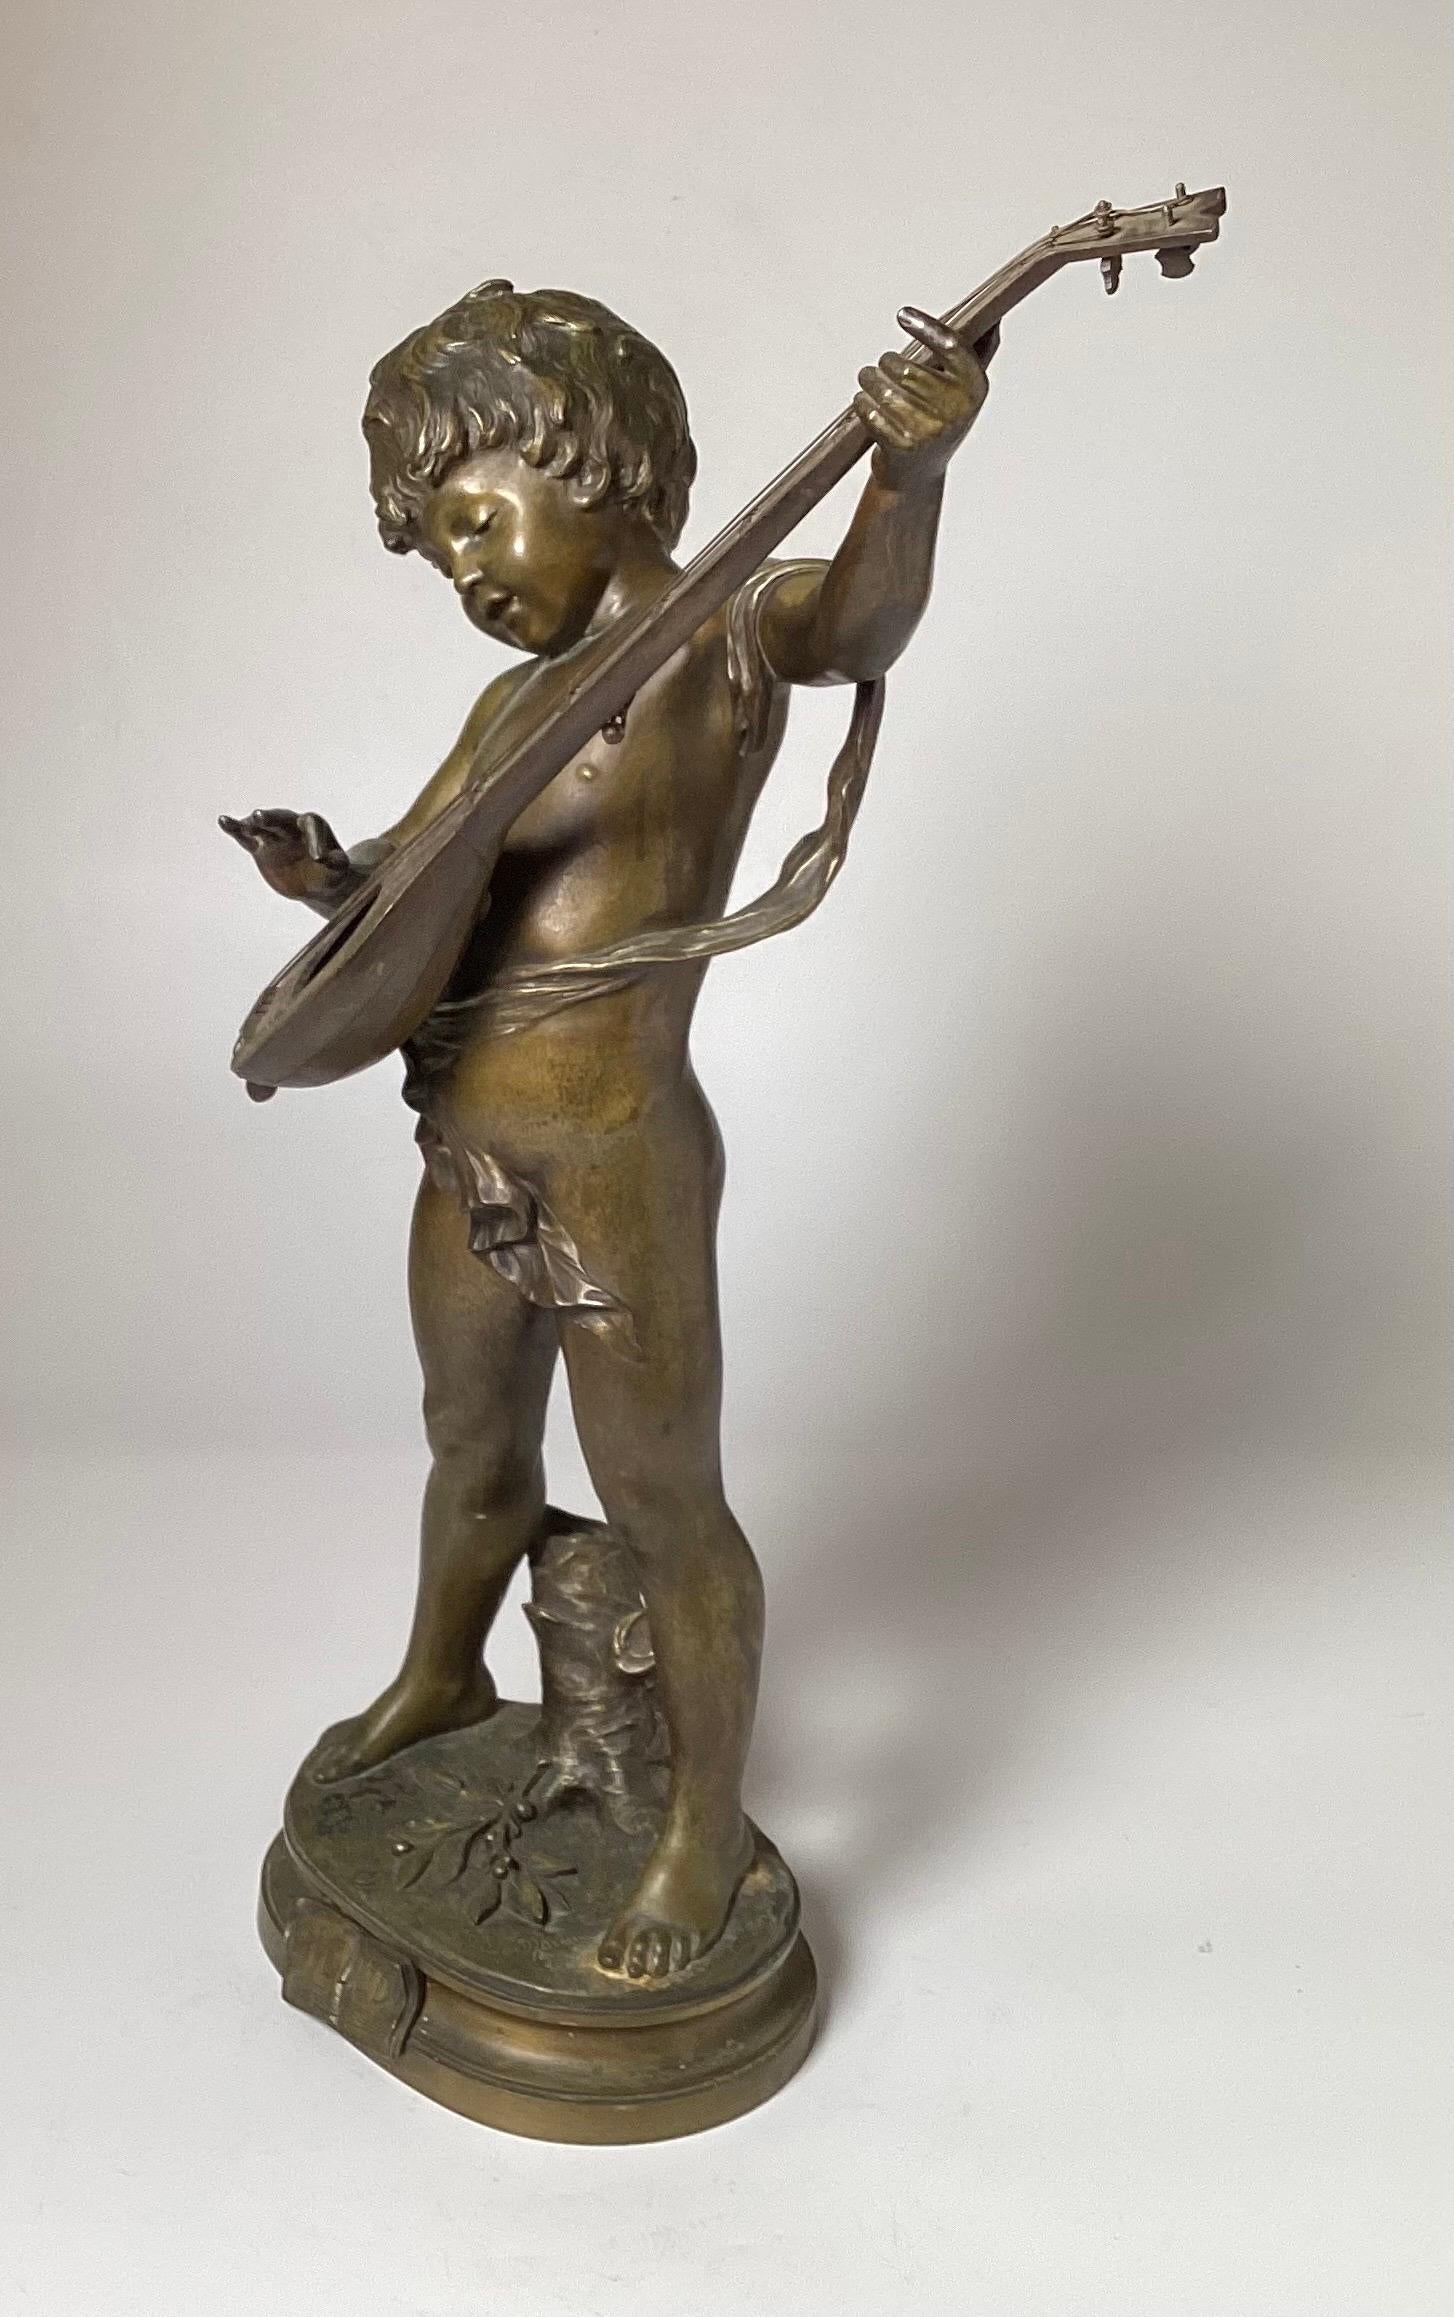 Sculpture en bronze patiné Art Nouveau de la fin du 19e siècle représentant un jeune garçon avec un instrument.  L'artiste a signé Auguste Morea, avec le poinçon du bronze français sur la base.  24 pouces de hauteur 